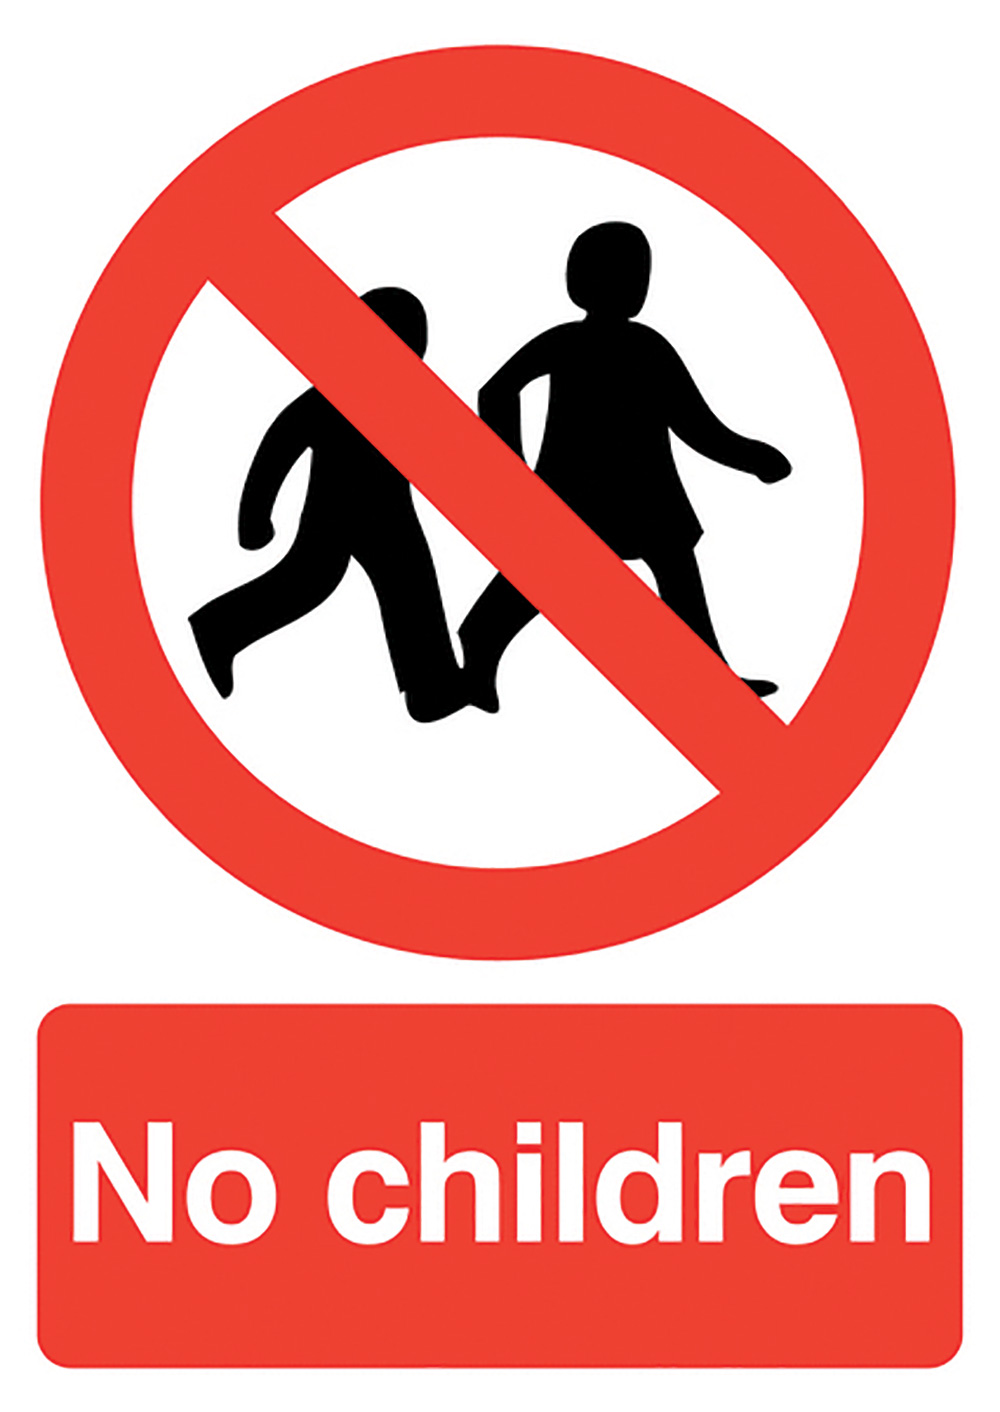 No Children  297x210mm 1.2mm Rigid Plastic Safety Sign  